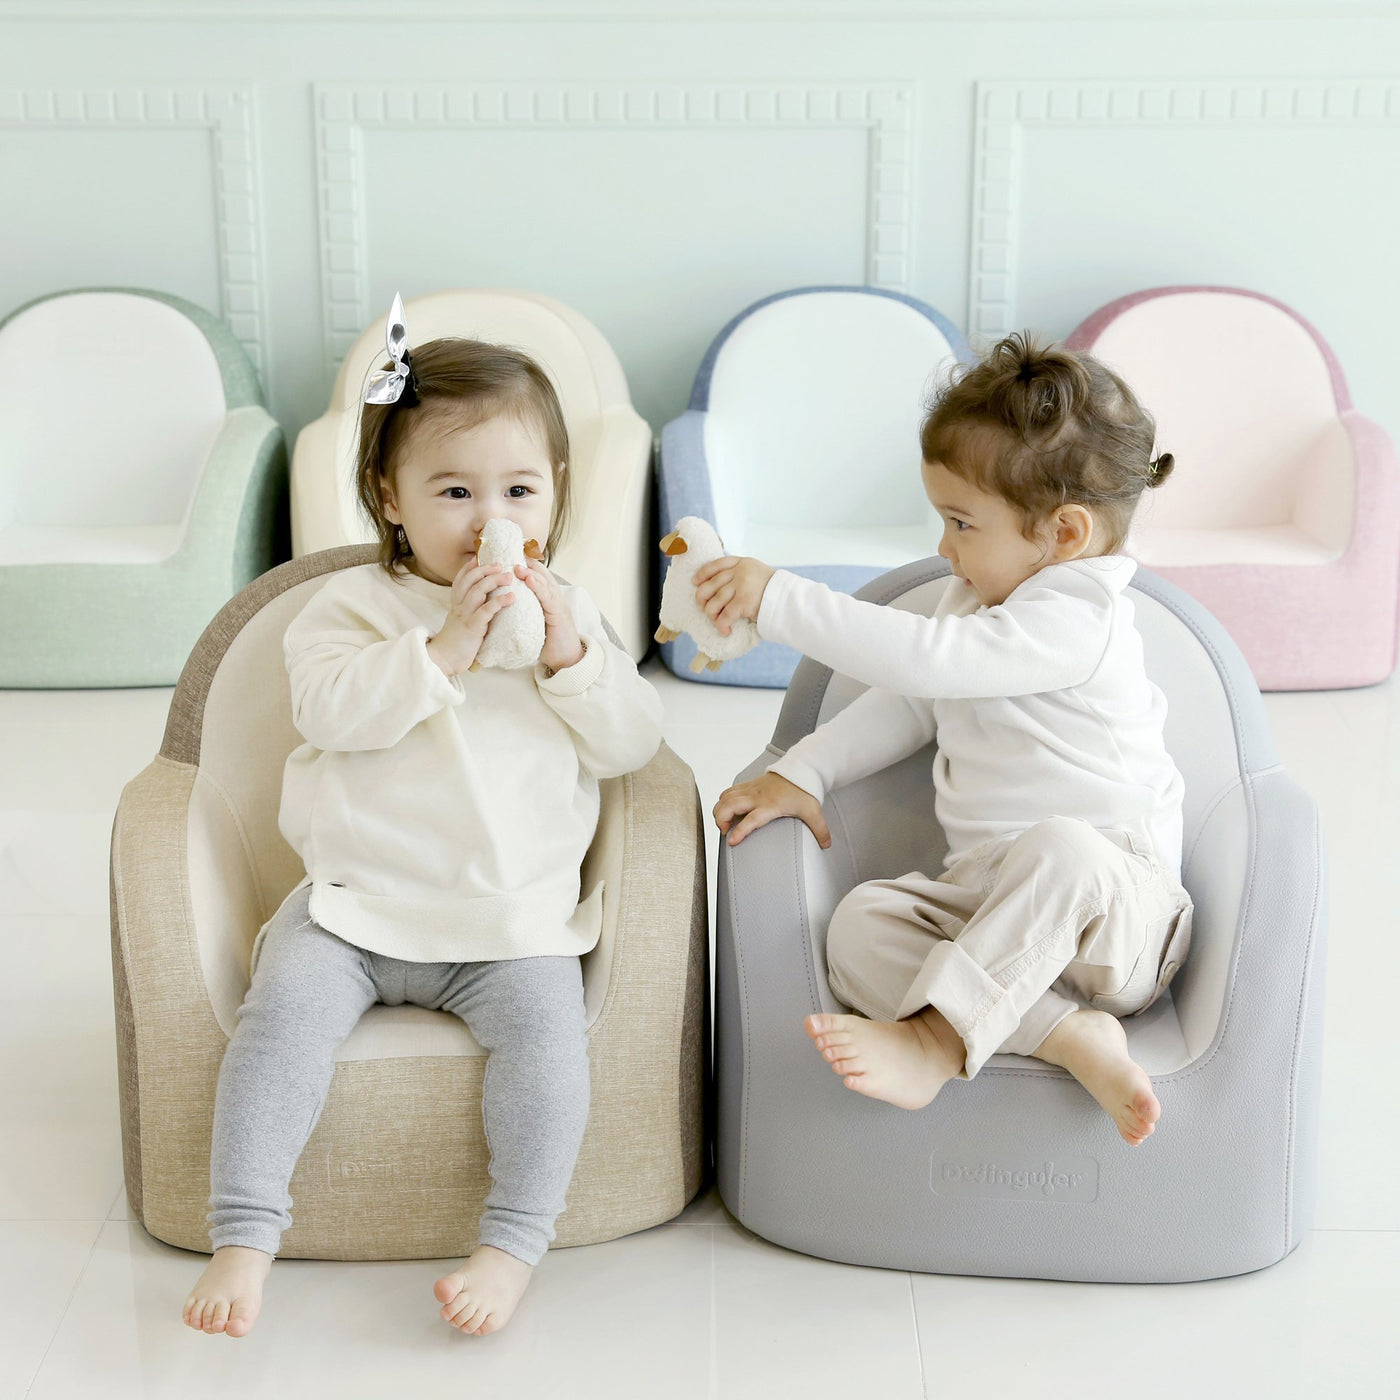 Sofkin Leather Luxury Kids Sofa by PBK - Posh Baby & Kids Canada